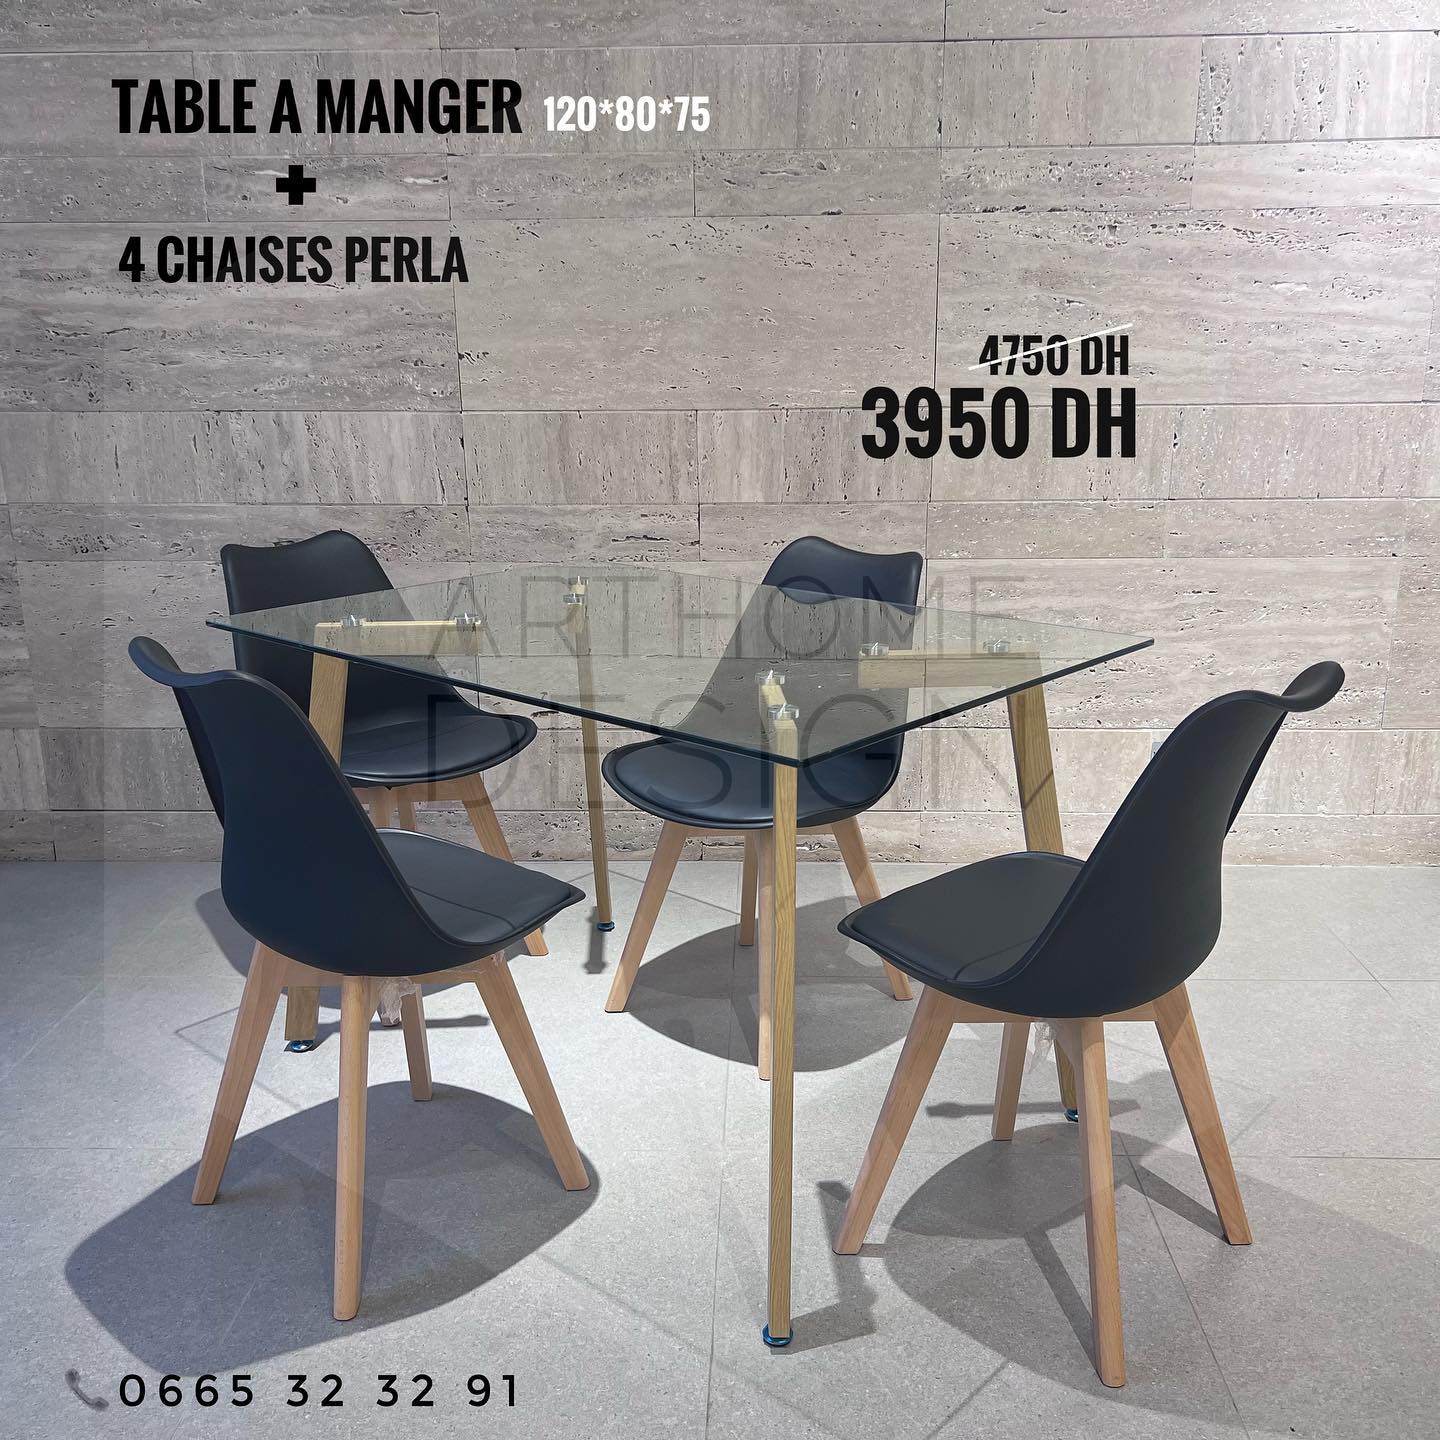 TABLE A MANGER RECTANGULAIRE EN VERRE (L) 120*80 + 4CHAISES PERLA